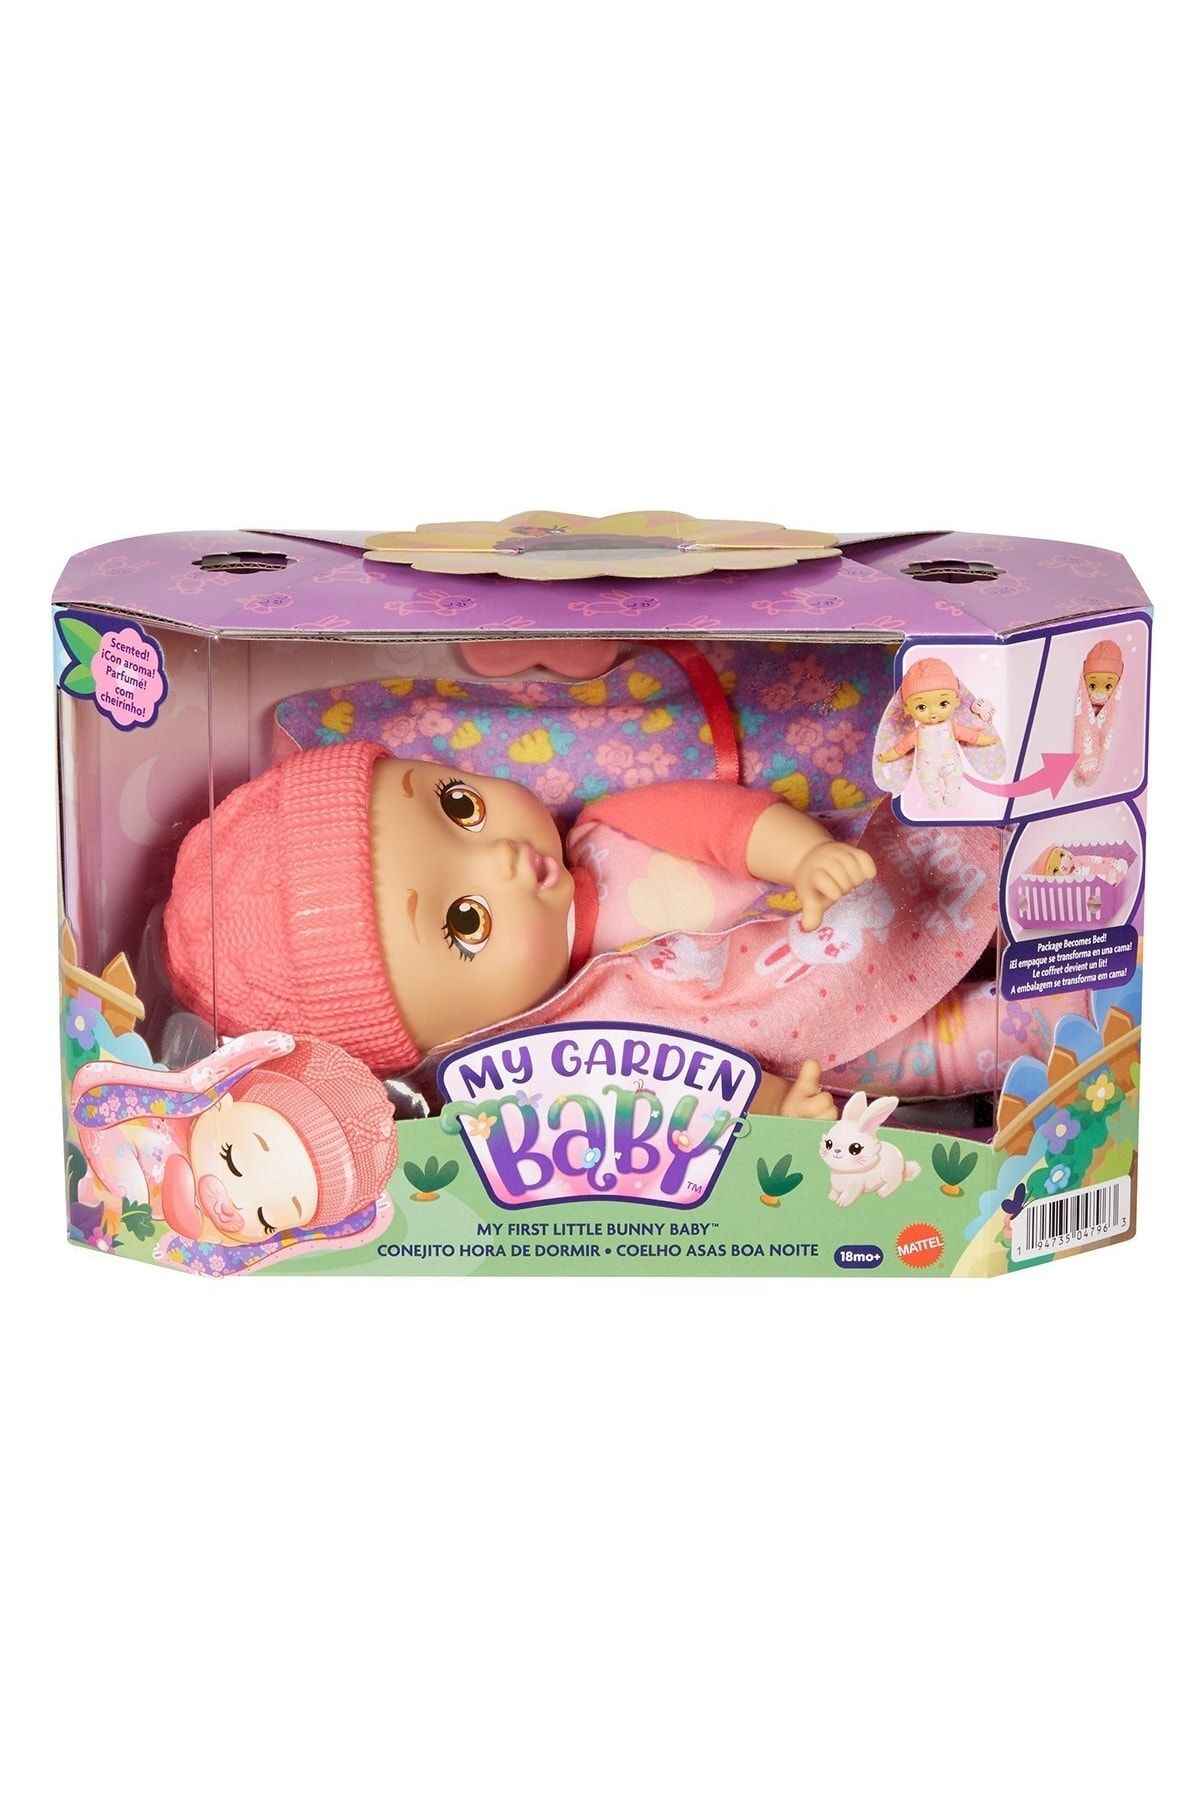 Mattel Kobal Hgc10 Ilk Tavşan Bebeğim - Pembe Bereli Bebek My Garden Baby